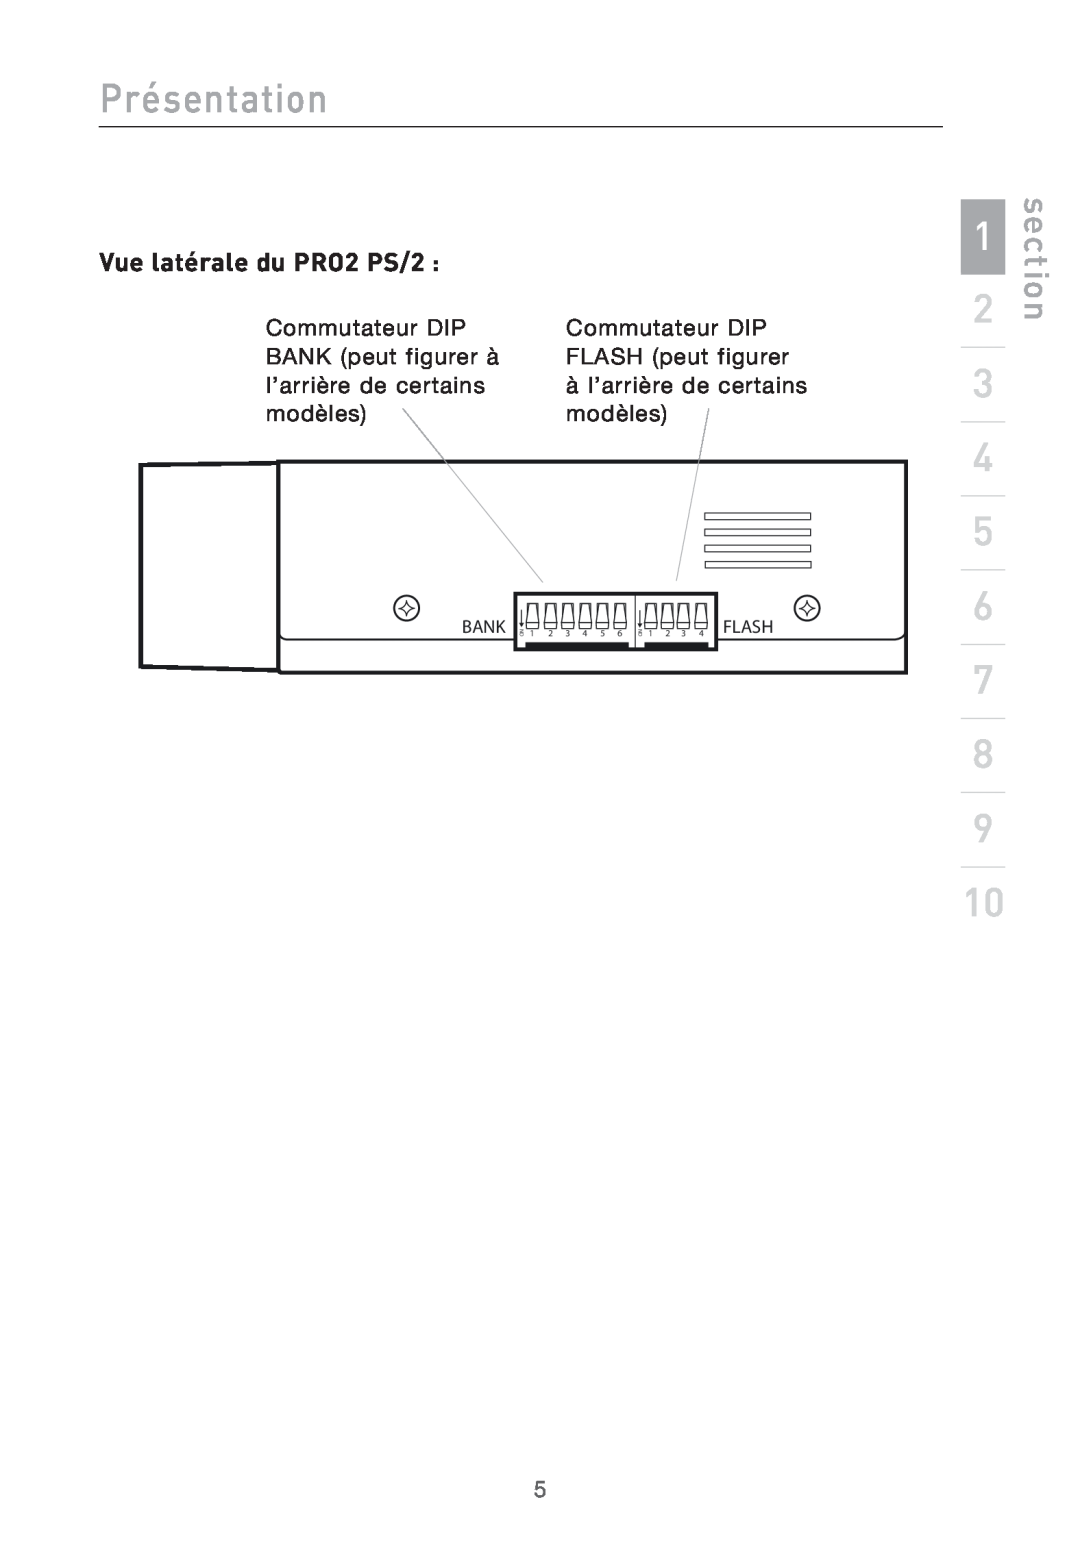 Belkin user manual Vue latérale du PRO2 PS/2, Présentation, section 